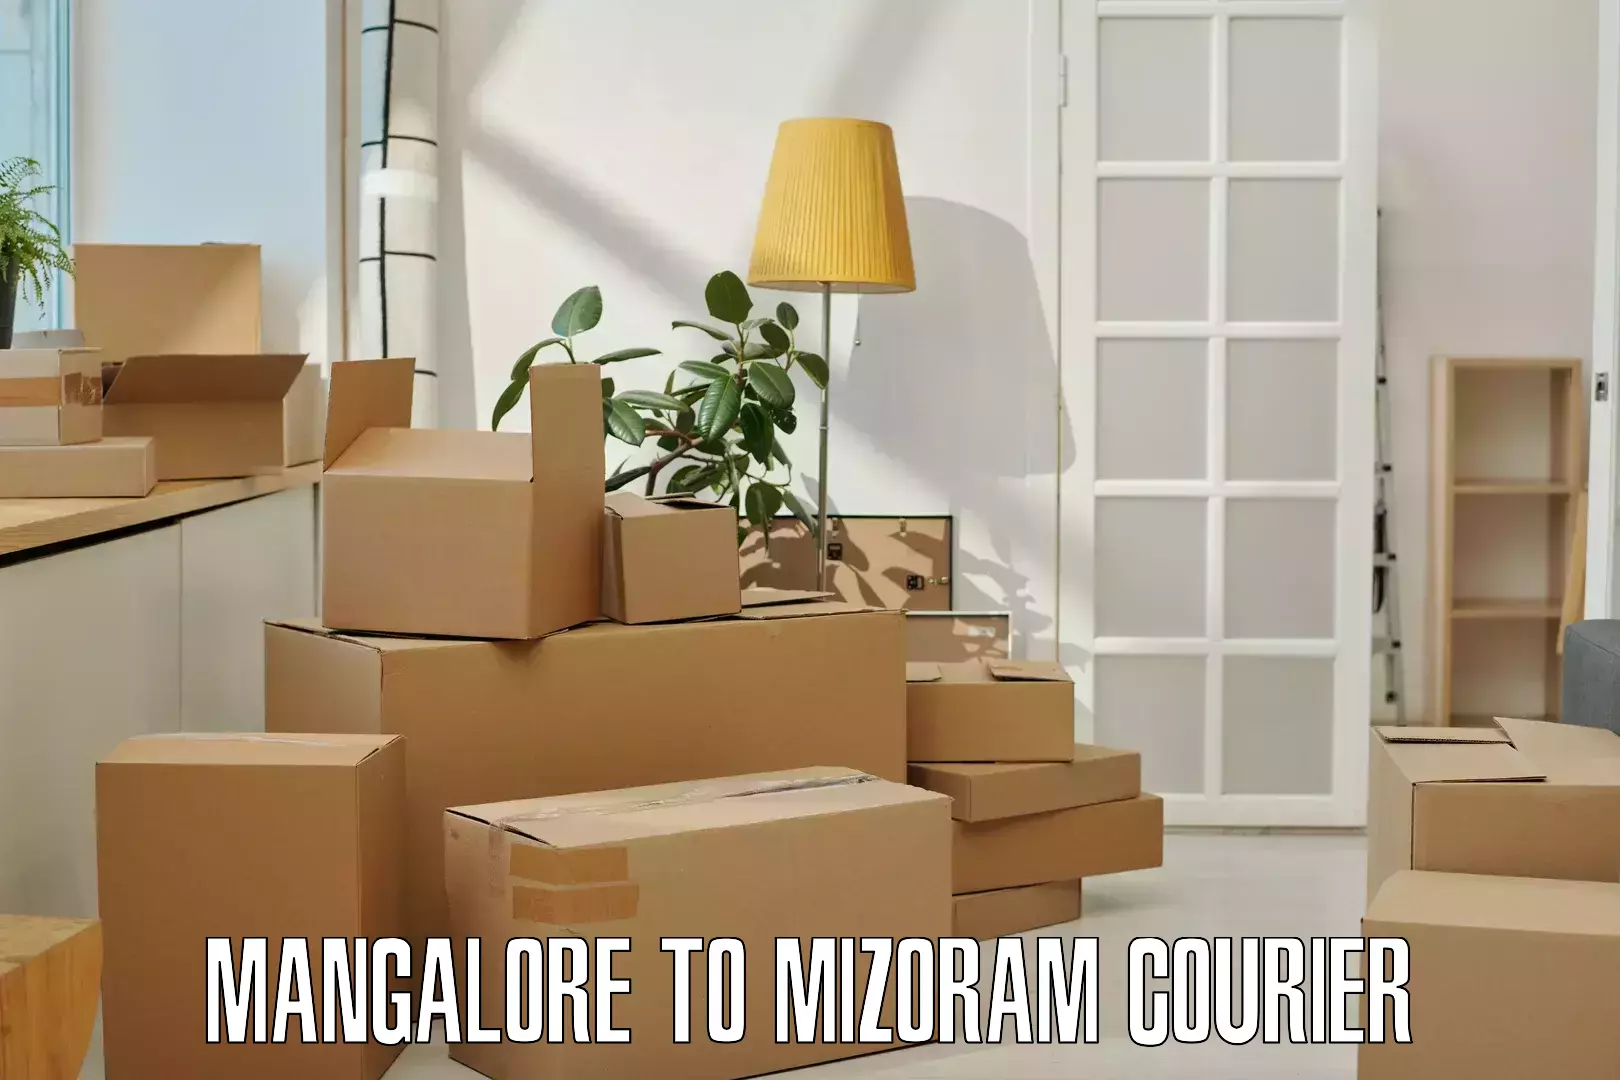 Efficient order fulfillment Mangalore to Mizoram